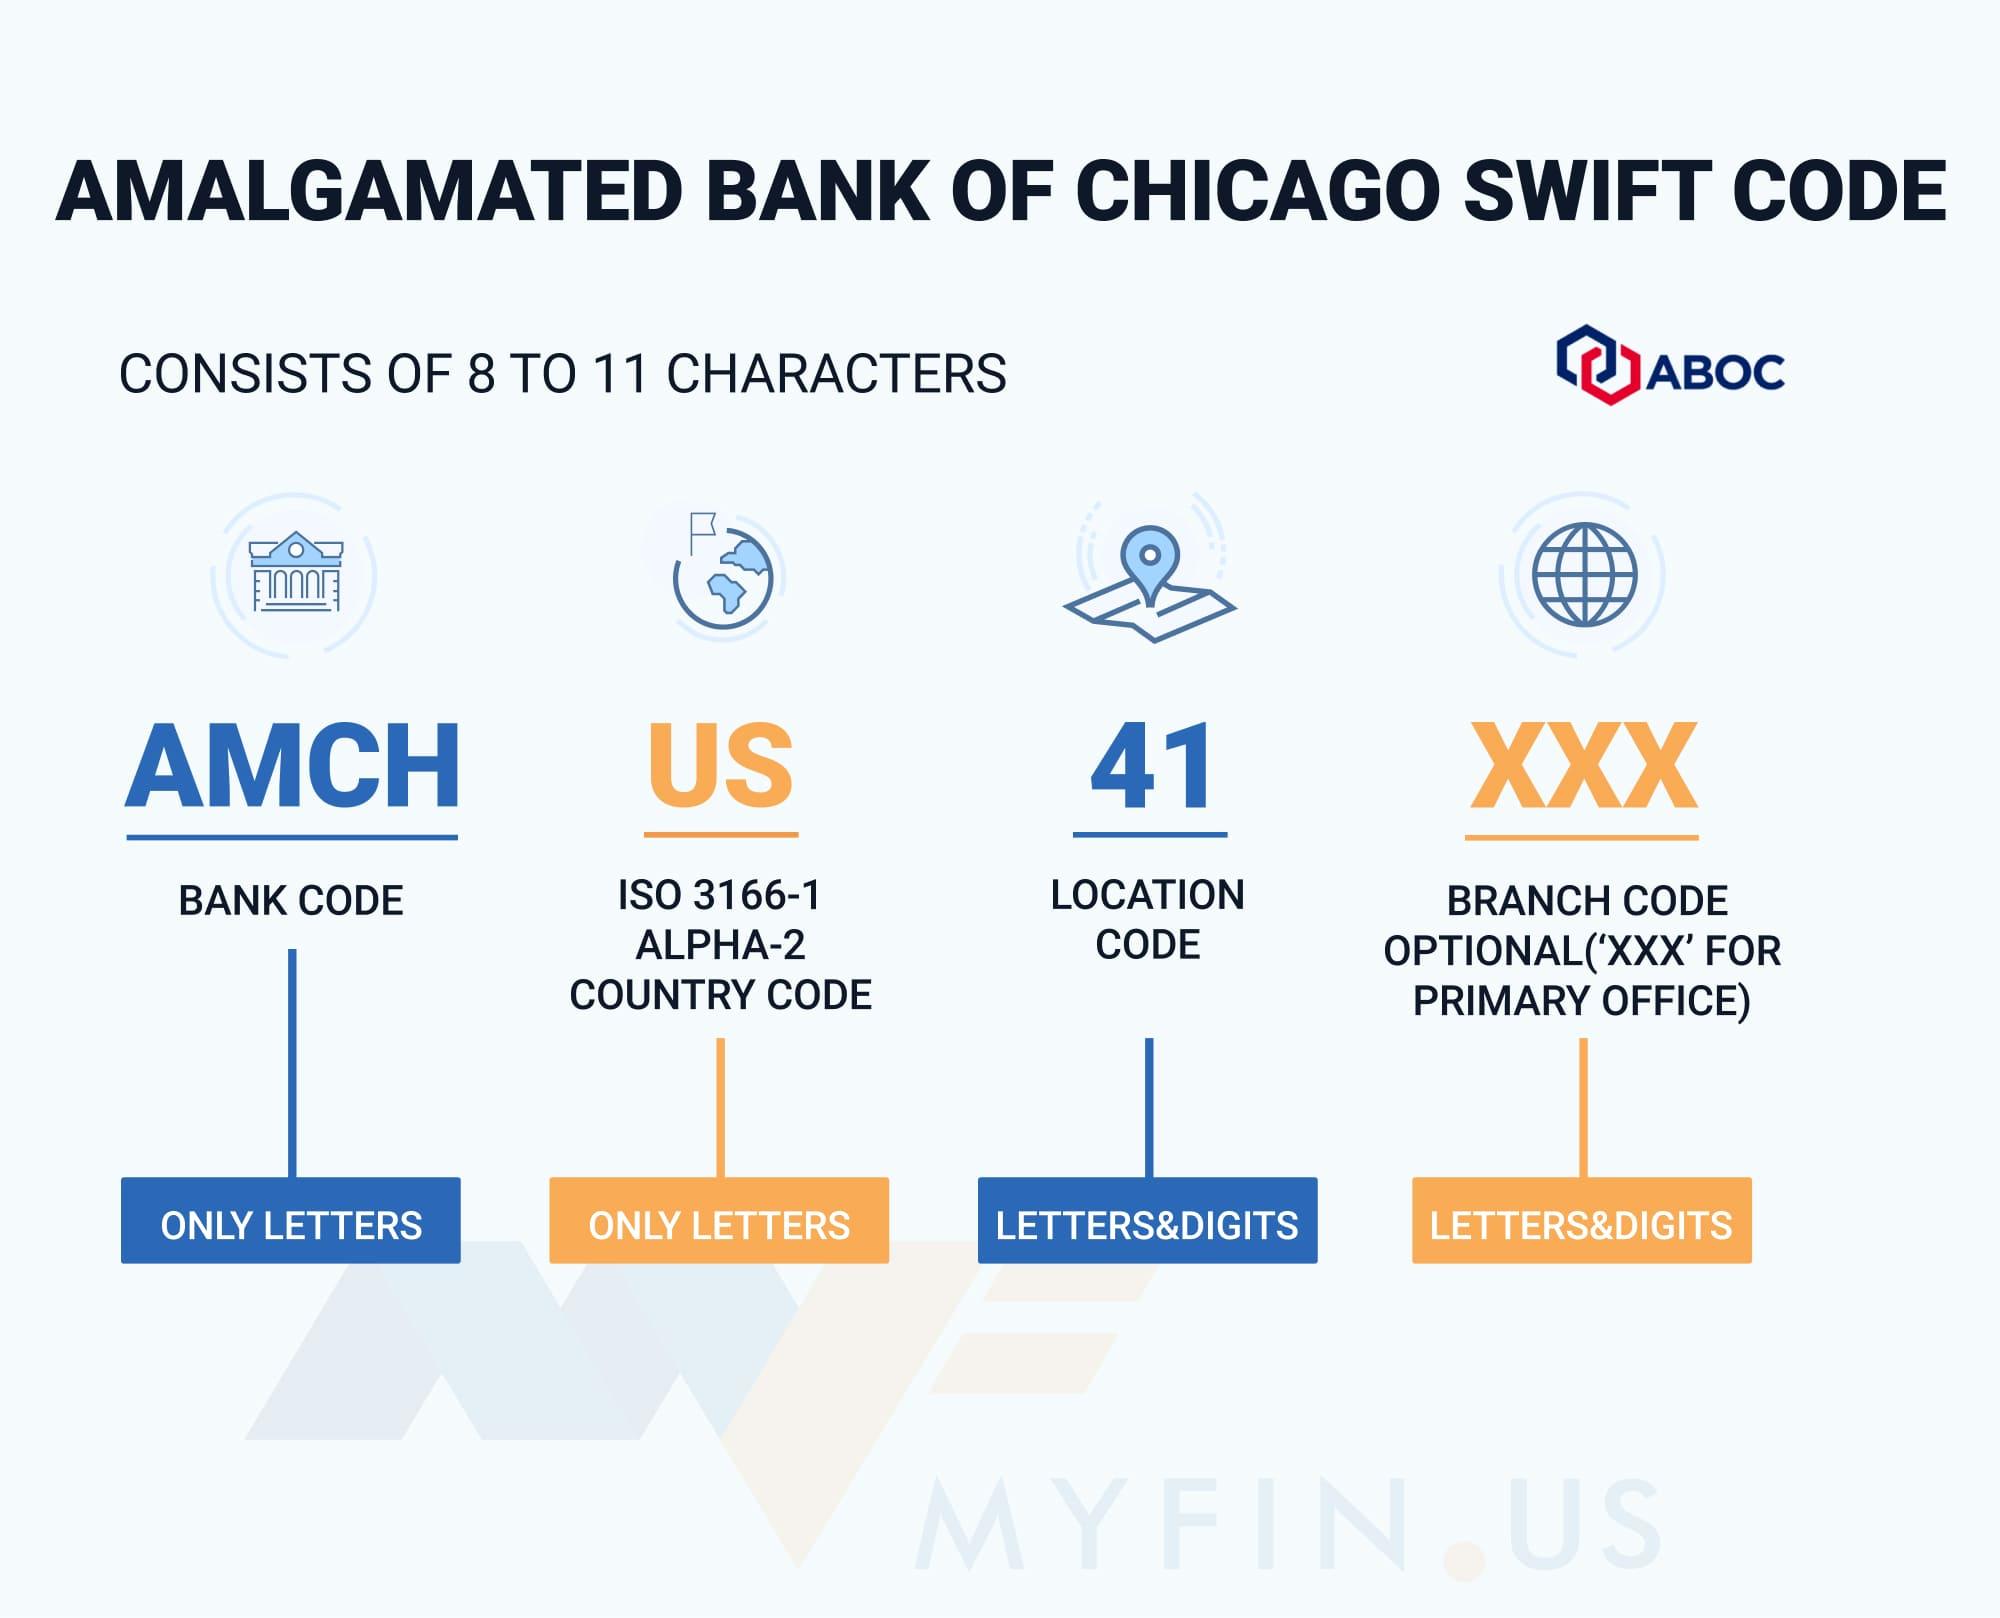 SWIFT-code Amalgamated Bank of Chicago